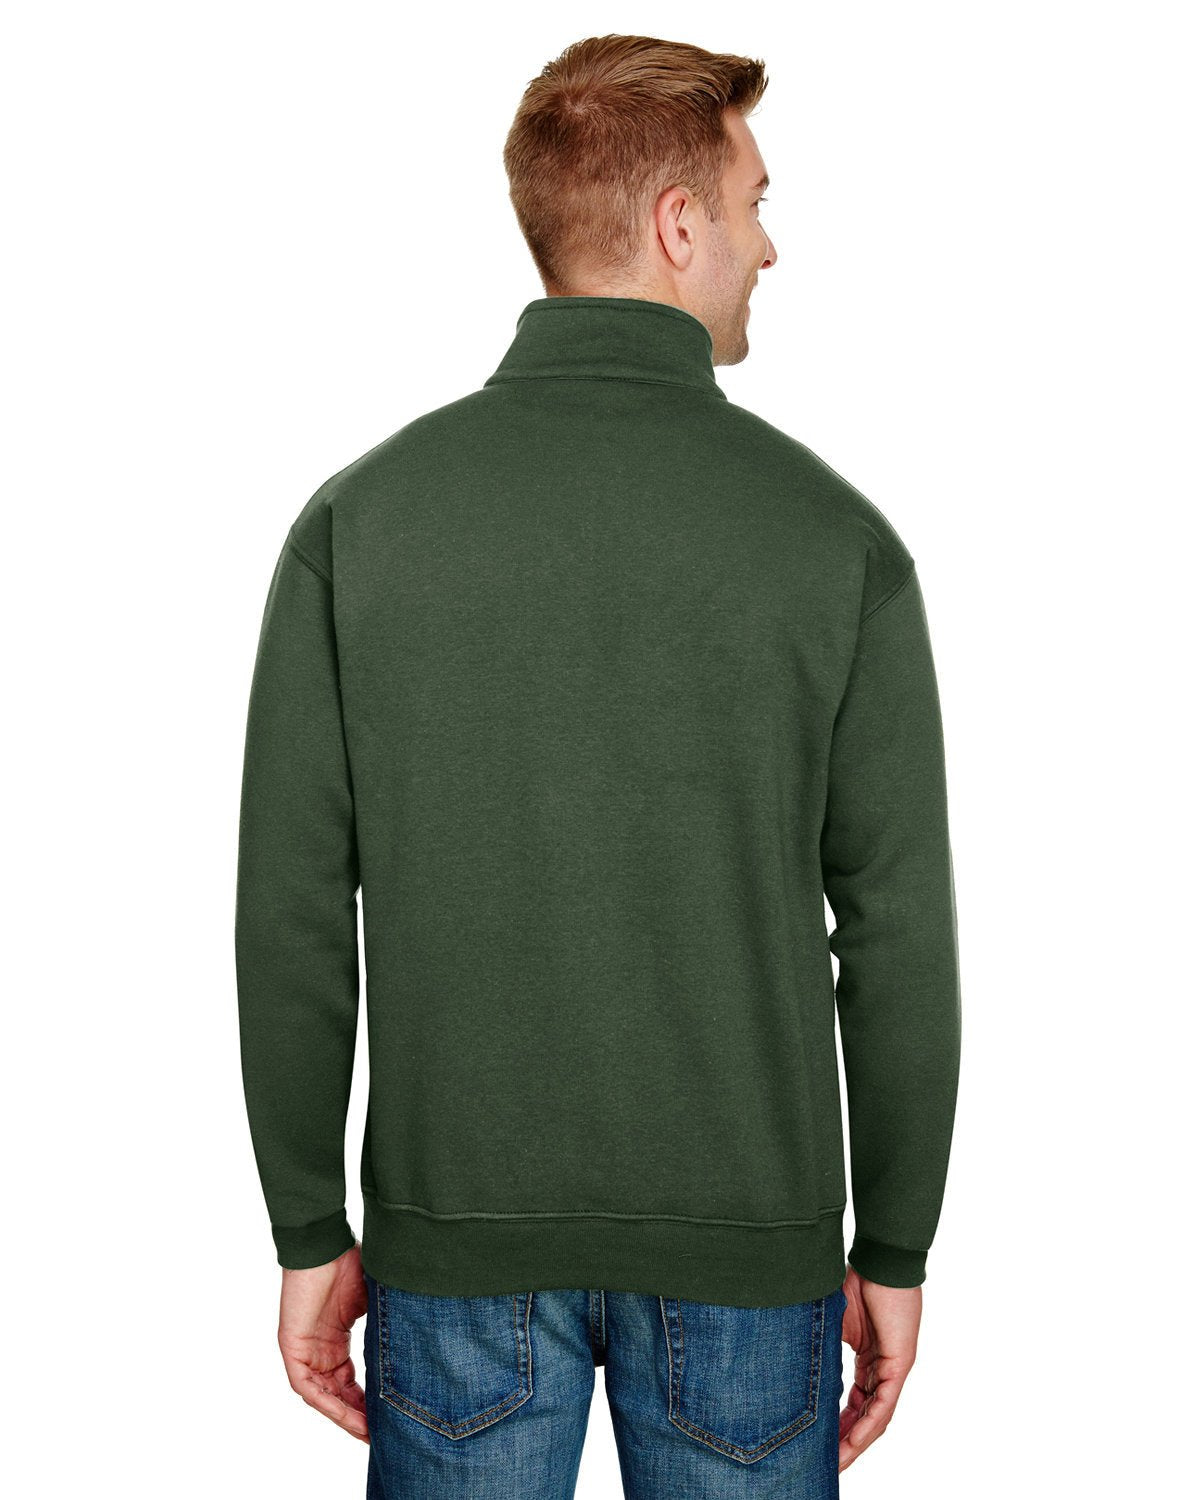 BA920-Bayside-HUNTER GREEN-Bayside-Sweatshirts-2